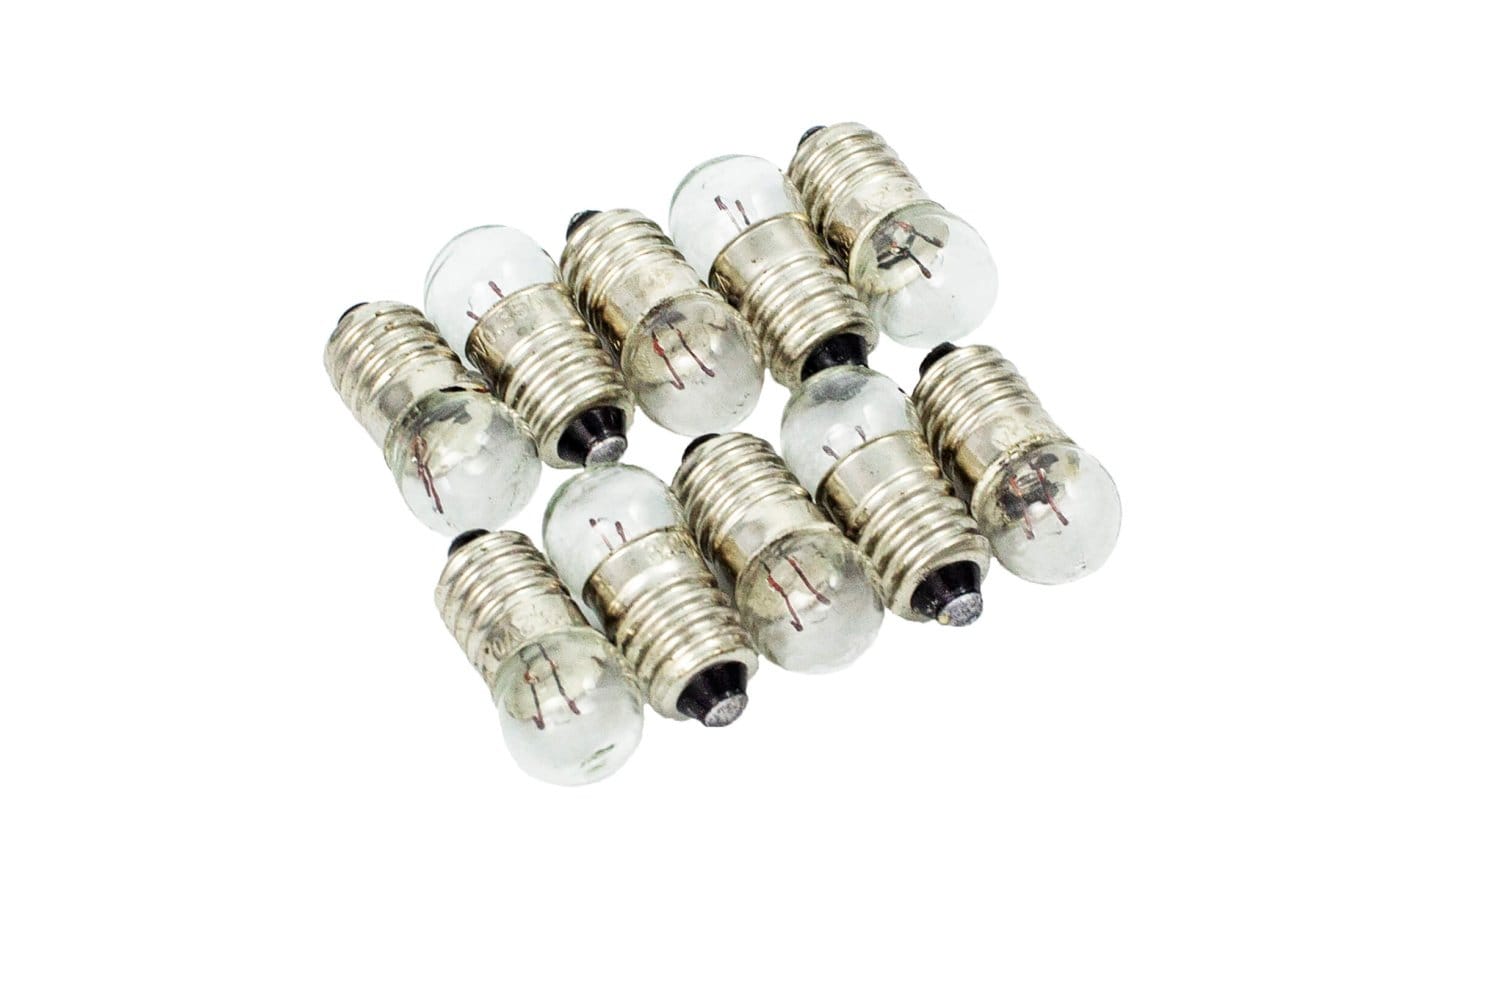 Arbor Scientific 3.2V Miniature Bulbs 10 Pack